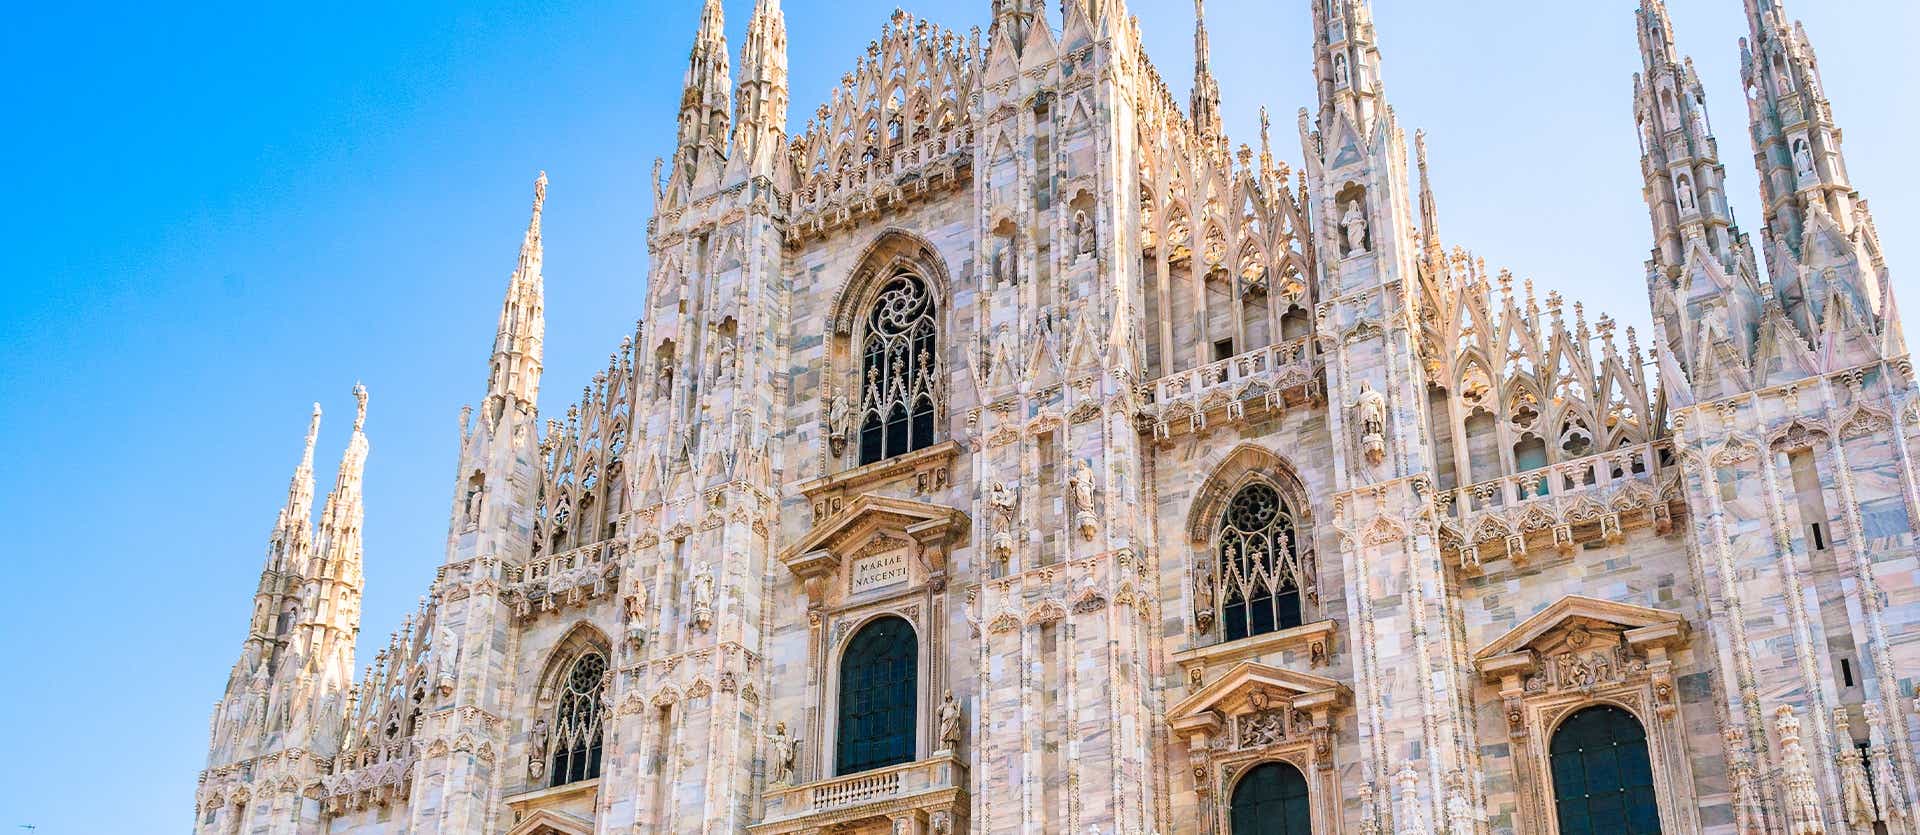 Duomo Cathedral <span class="iconos separador"></span> Milan